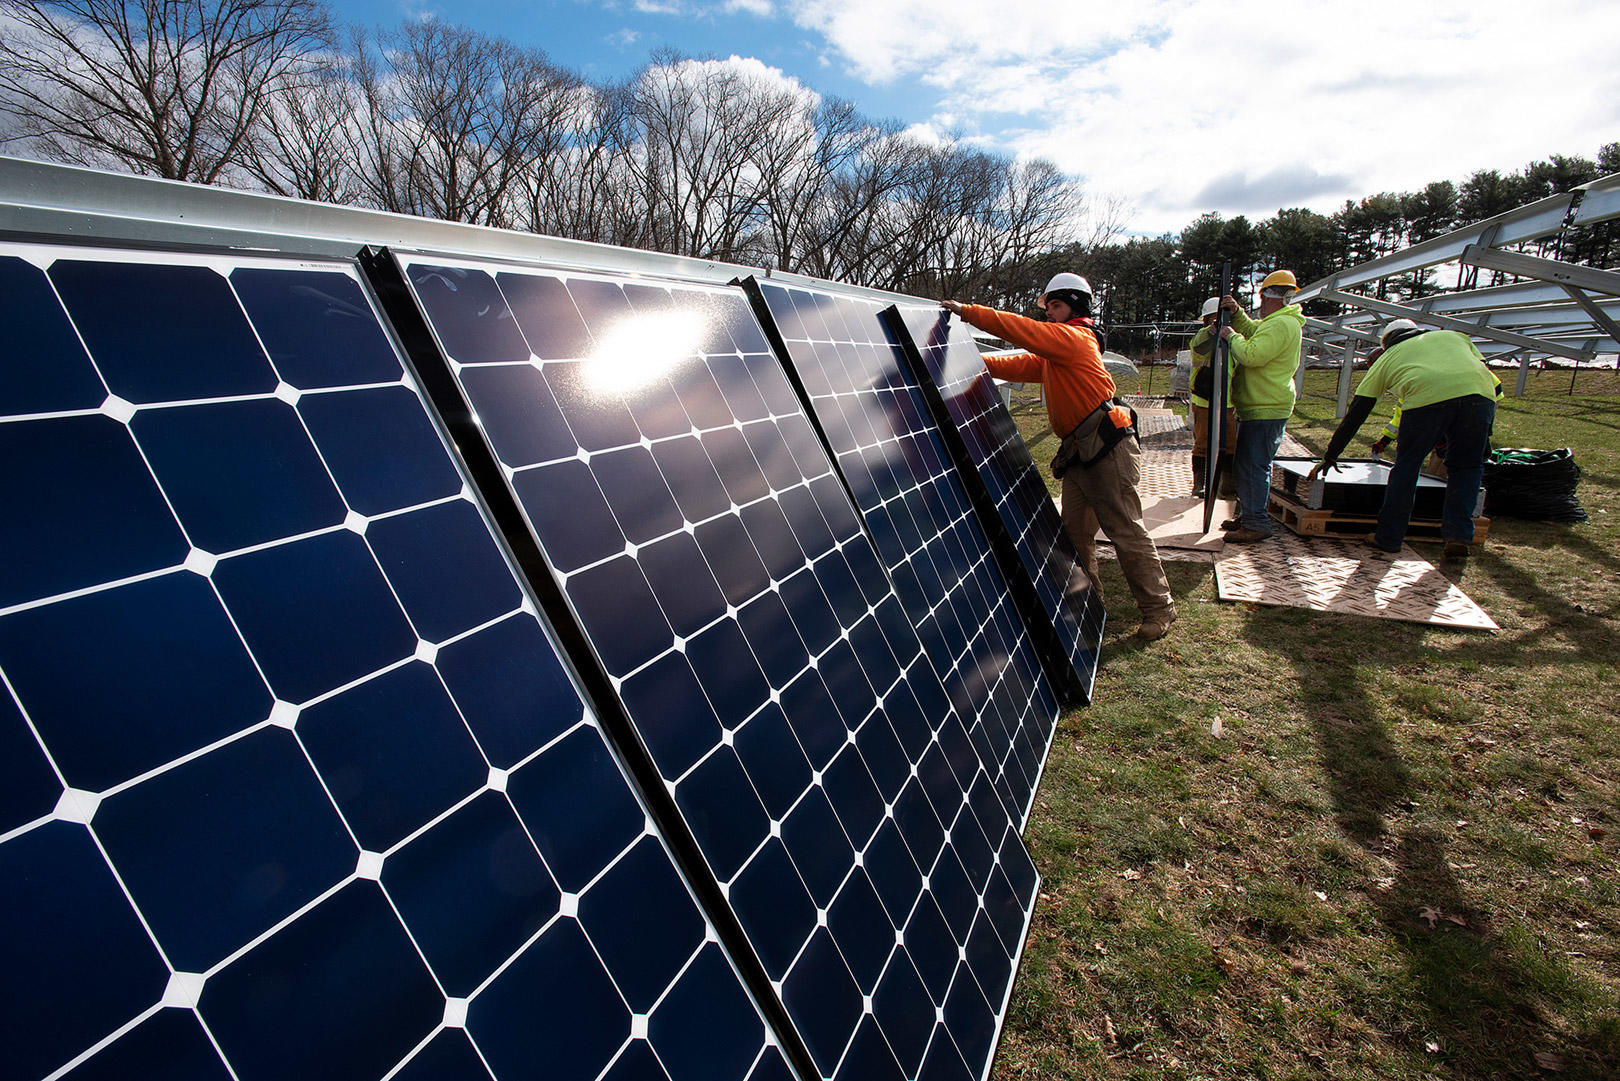 Solar installation at Arnold Arboretum